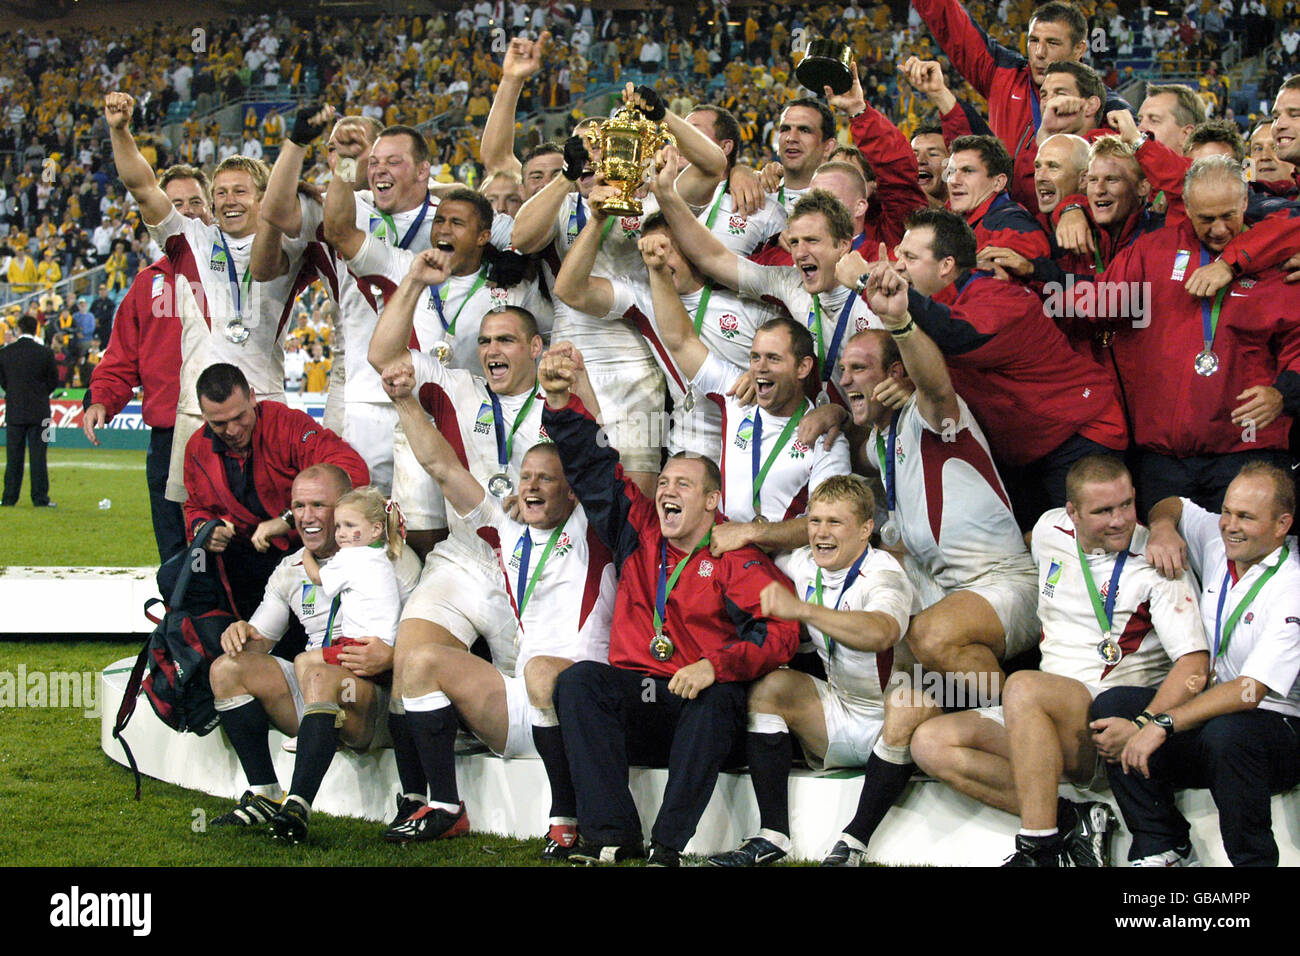 Rugby Union - Weltmeisterschaft 2003 - Finale - England gegen Australien. England Spieler feiern mit der William Webb Ellis Trophäe Stockfoto